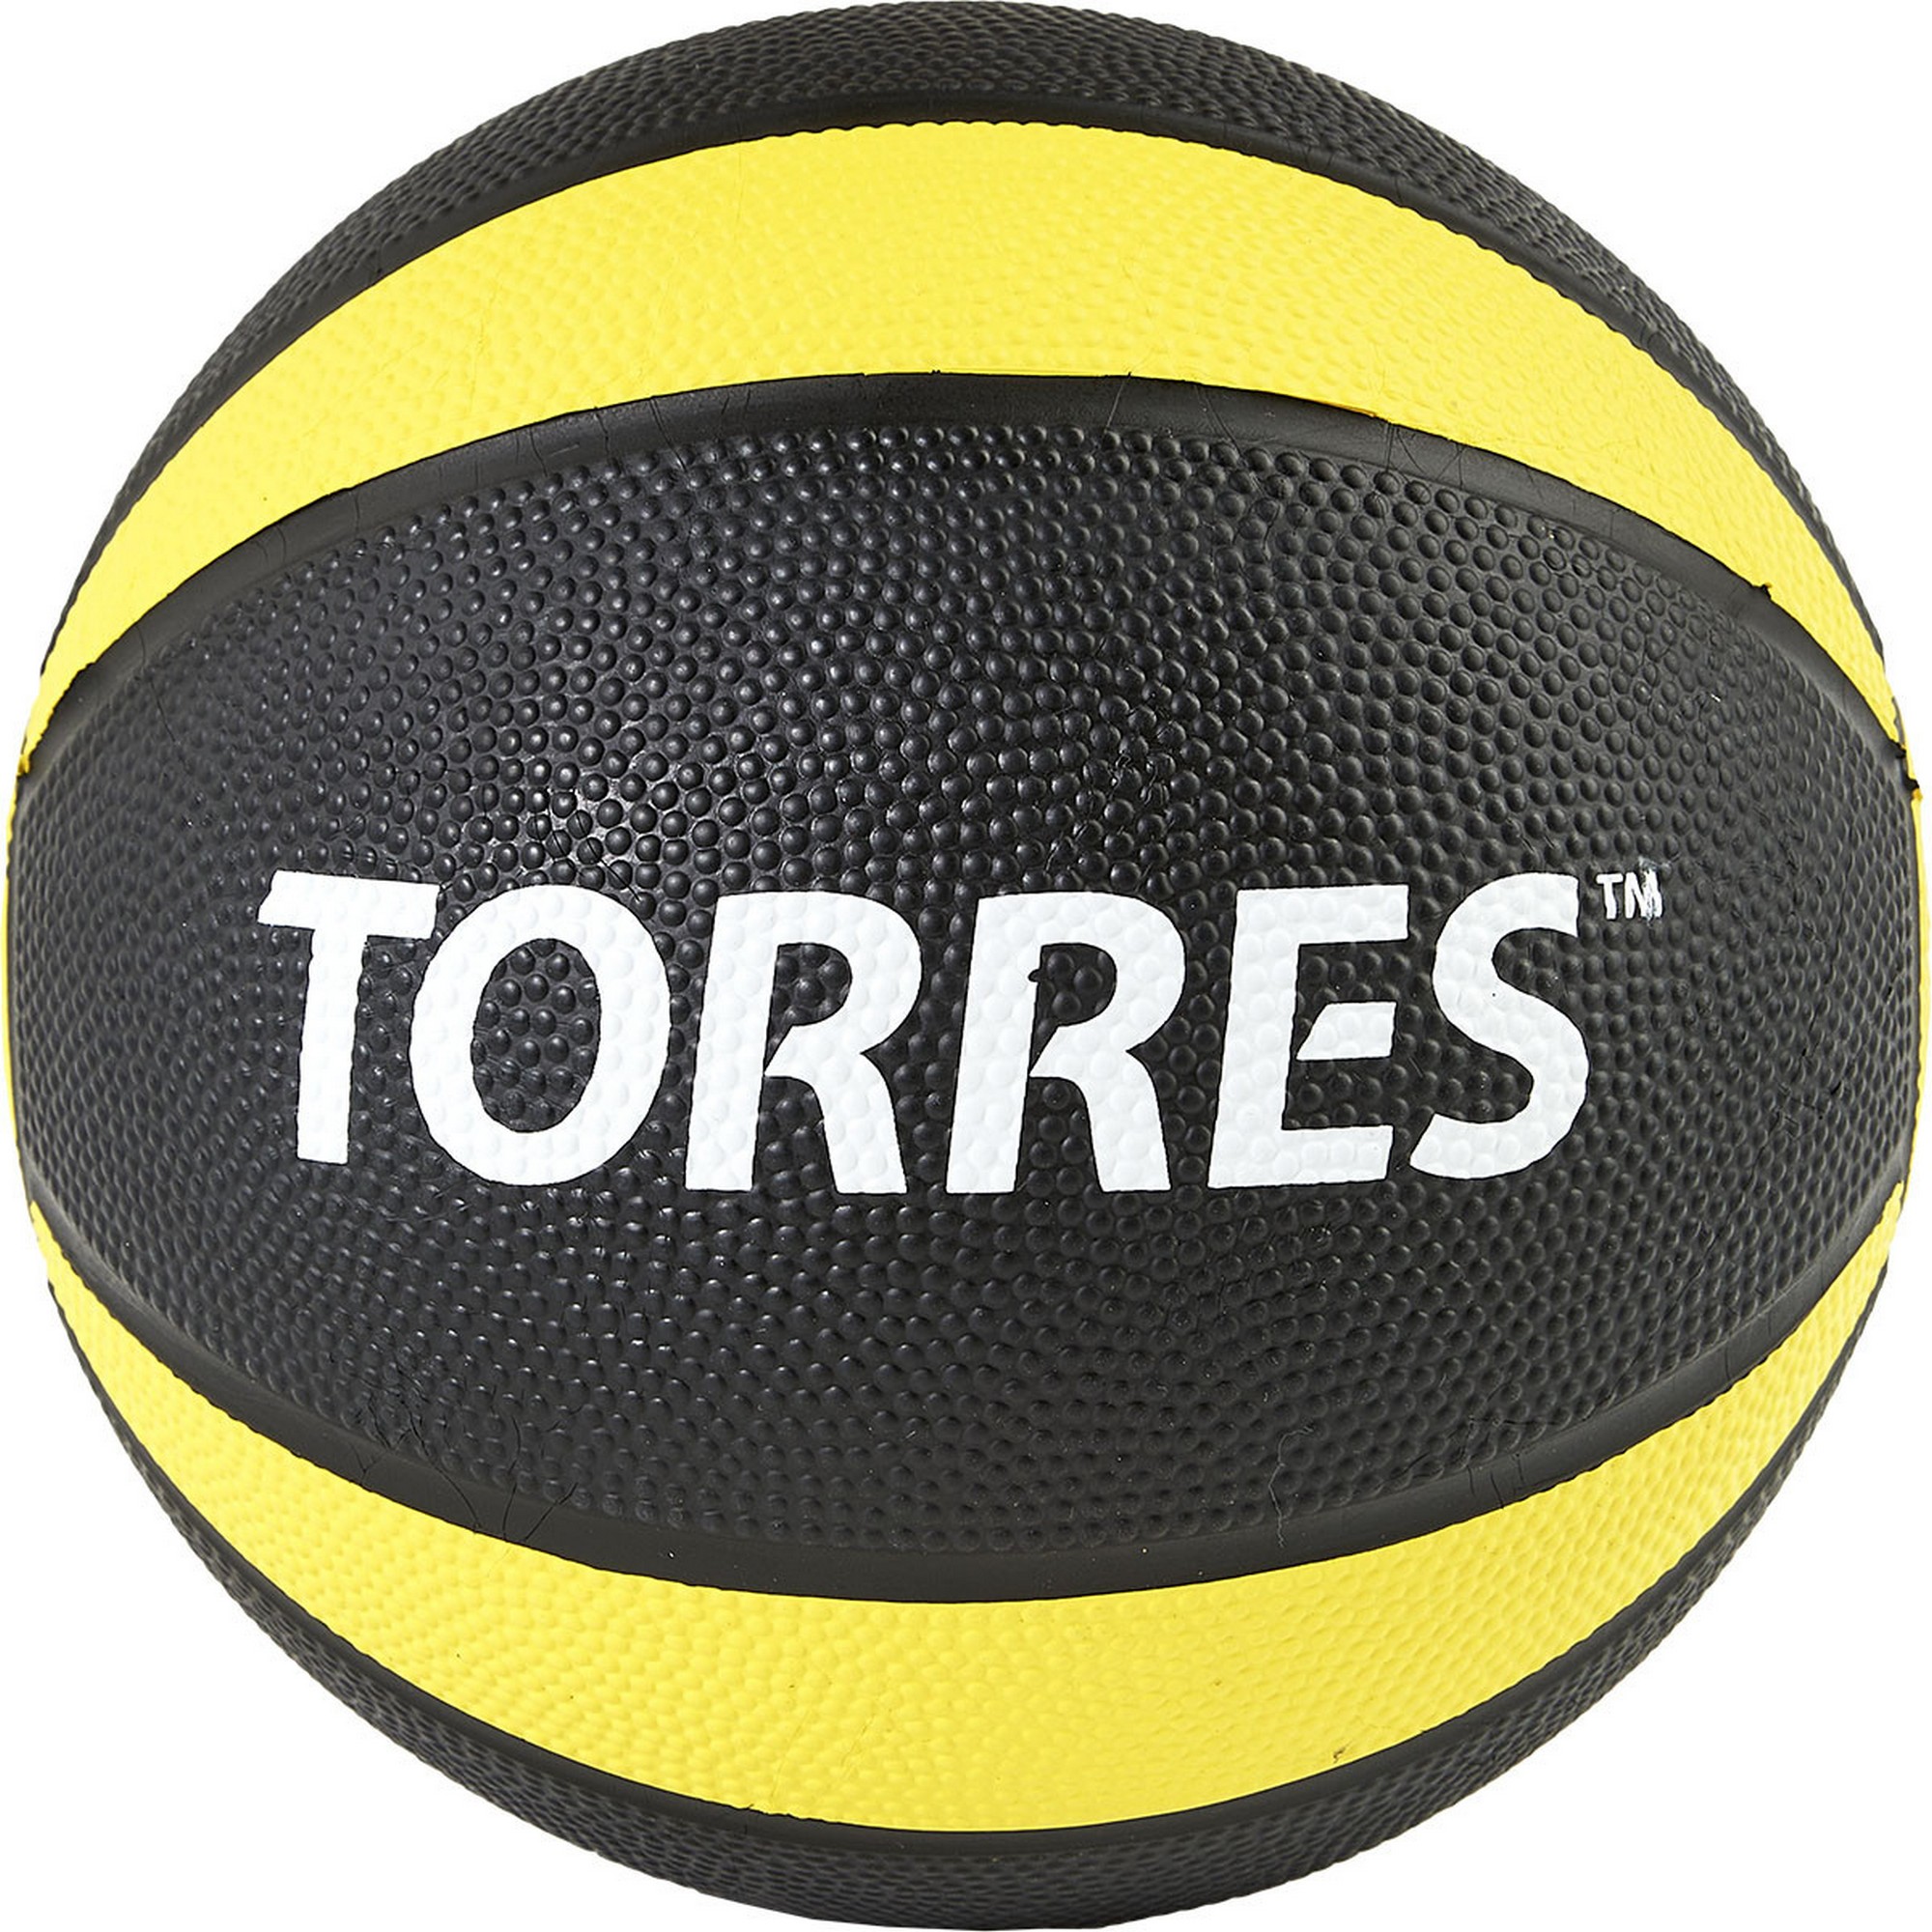  1 Torres AL00221 --